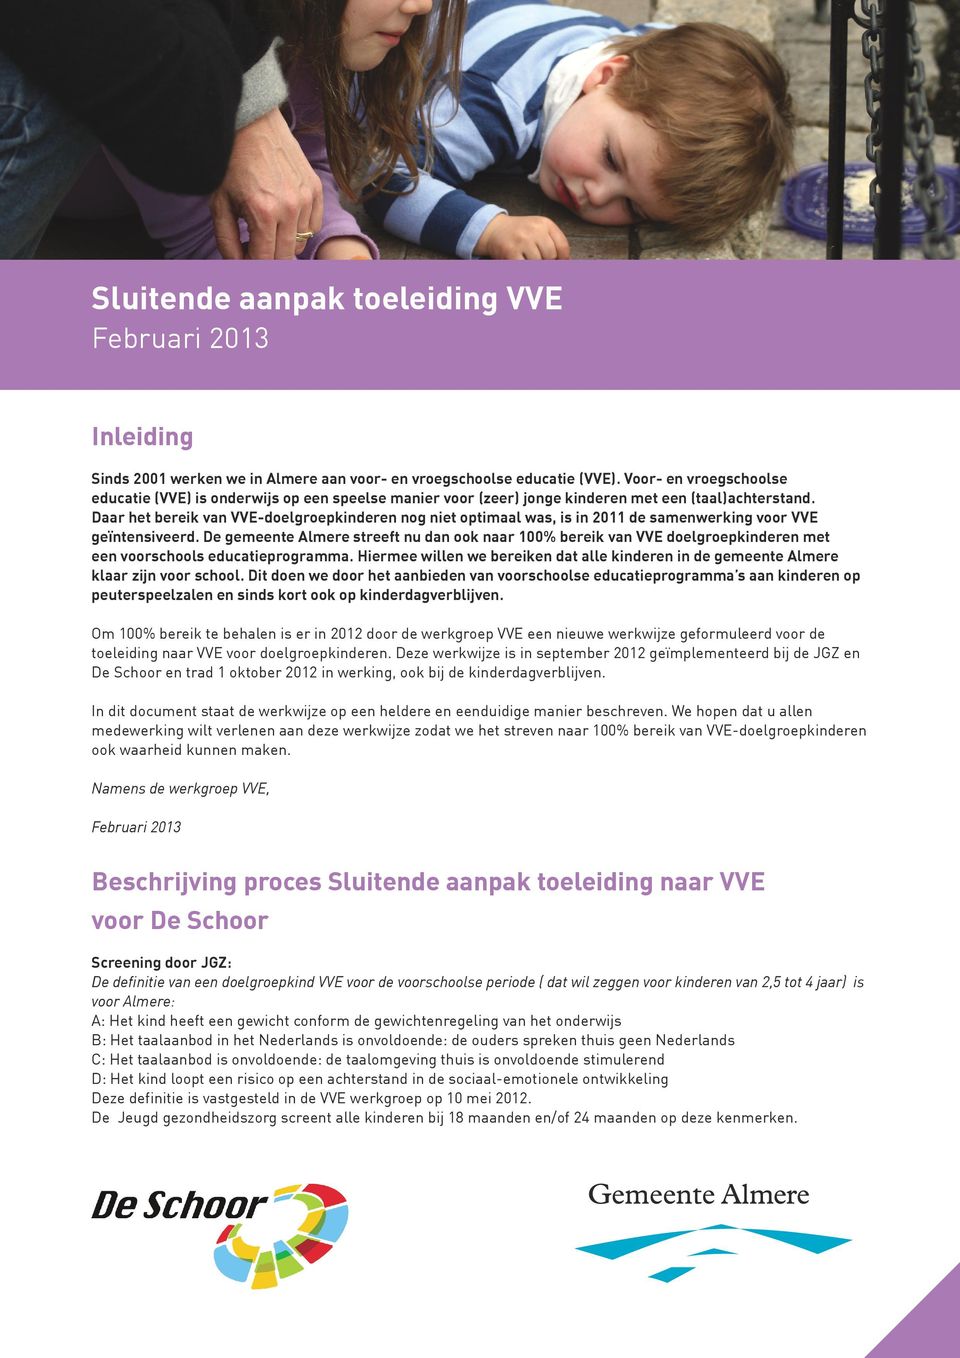 Daar het bereik van VVE-doelgroepkinderen nog niet optimaal was, is in 2011 de samenwerking voor VVE geïntensiveerd.